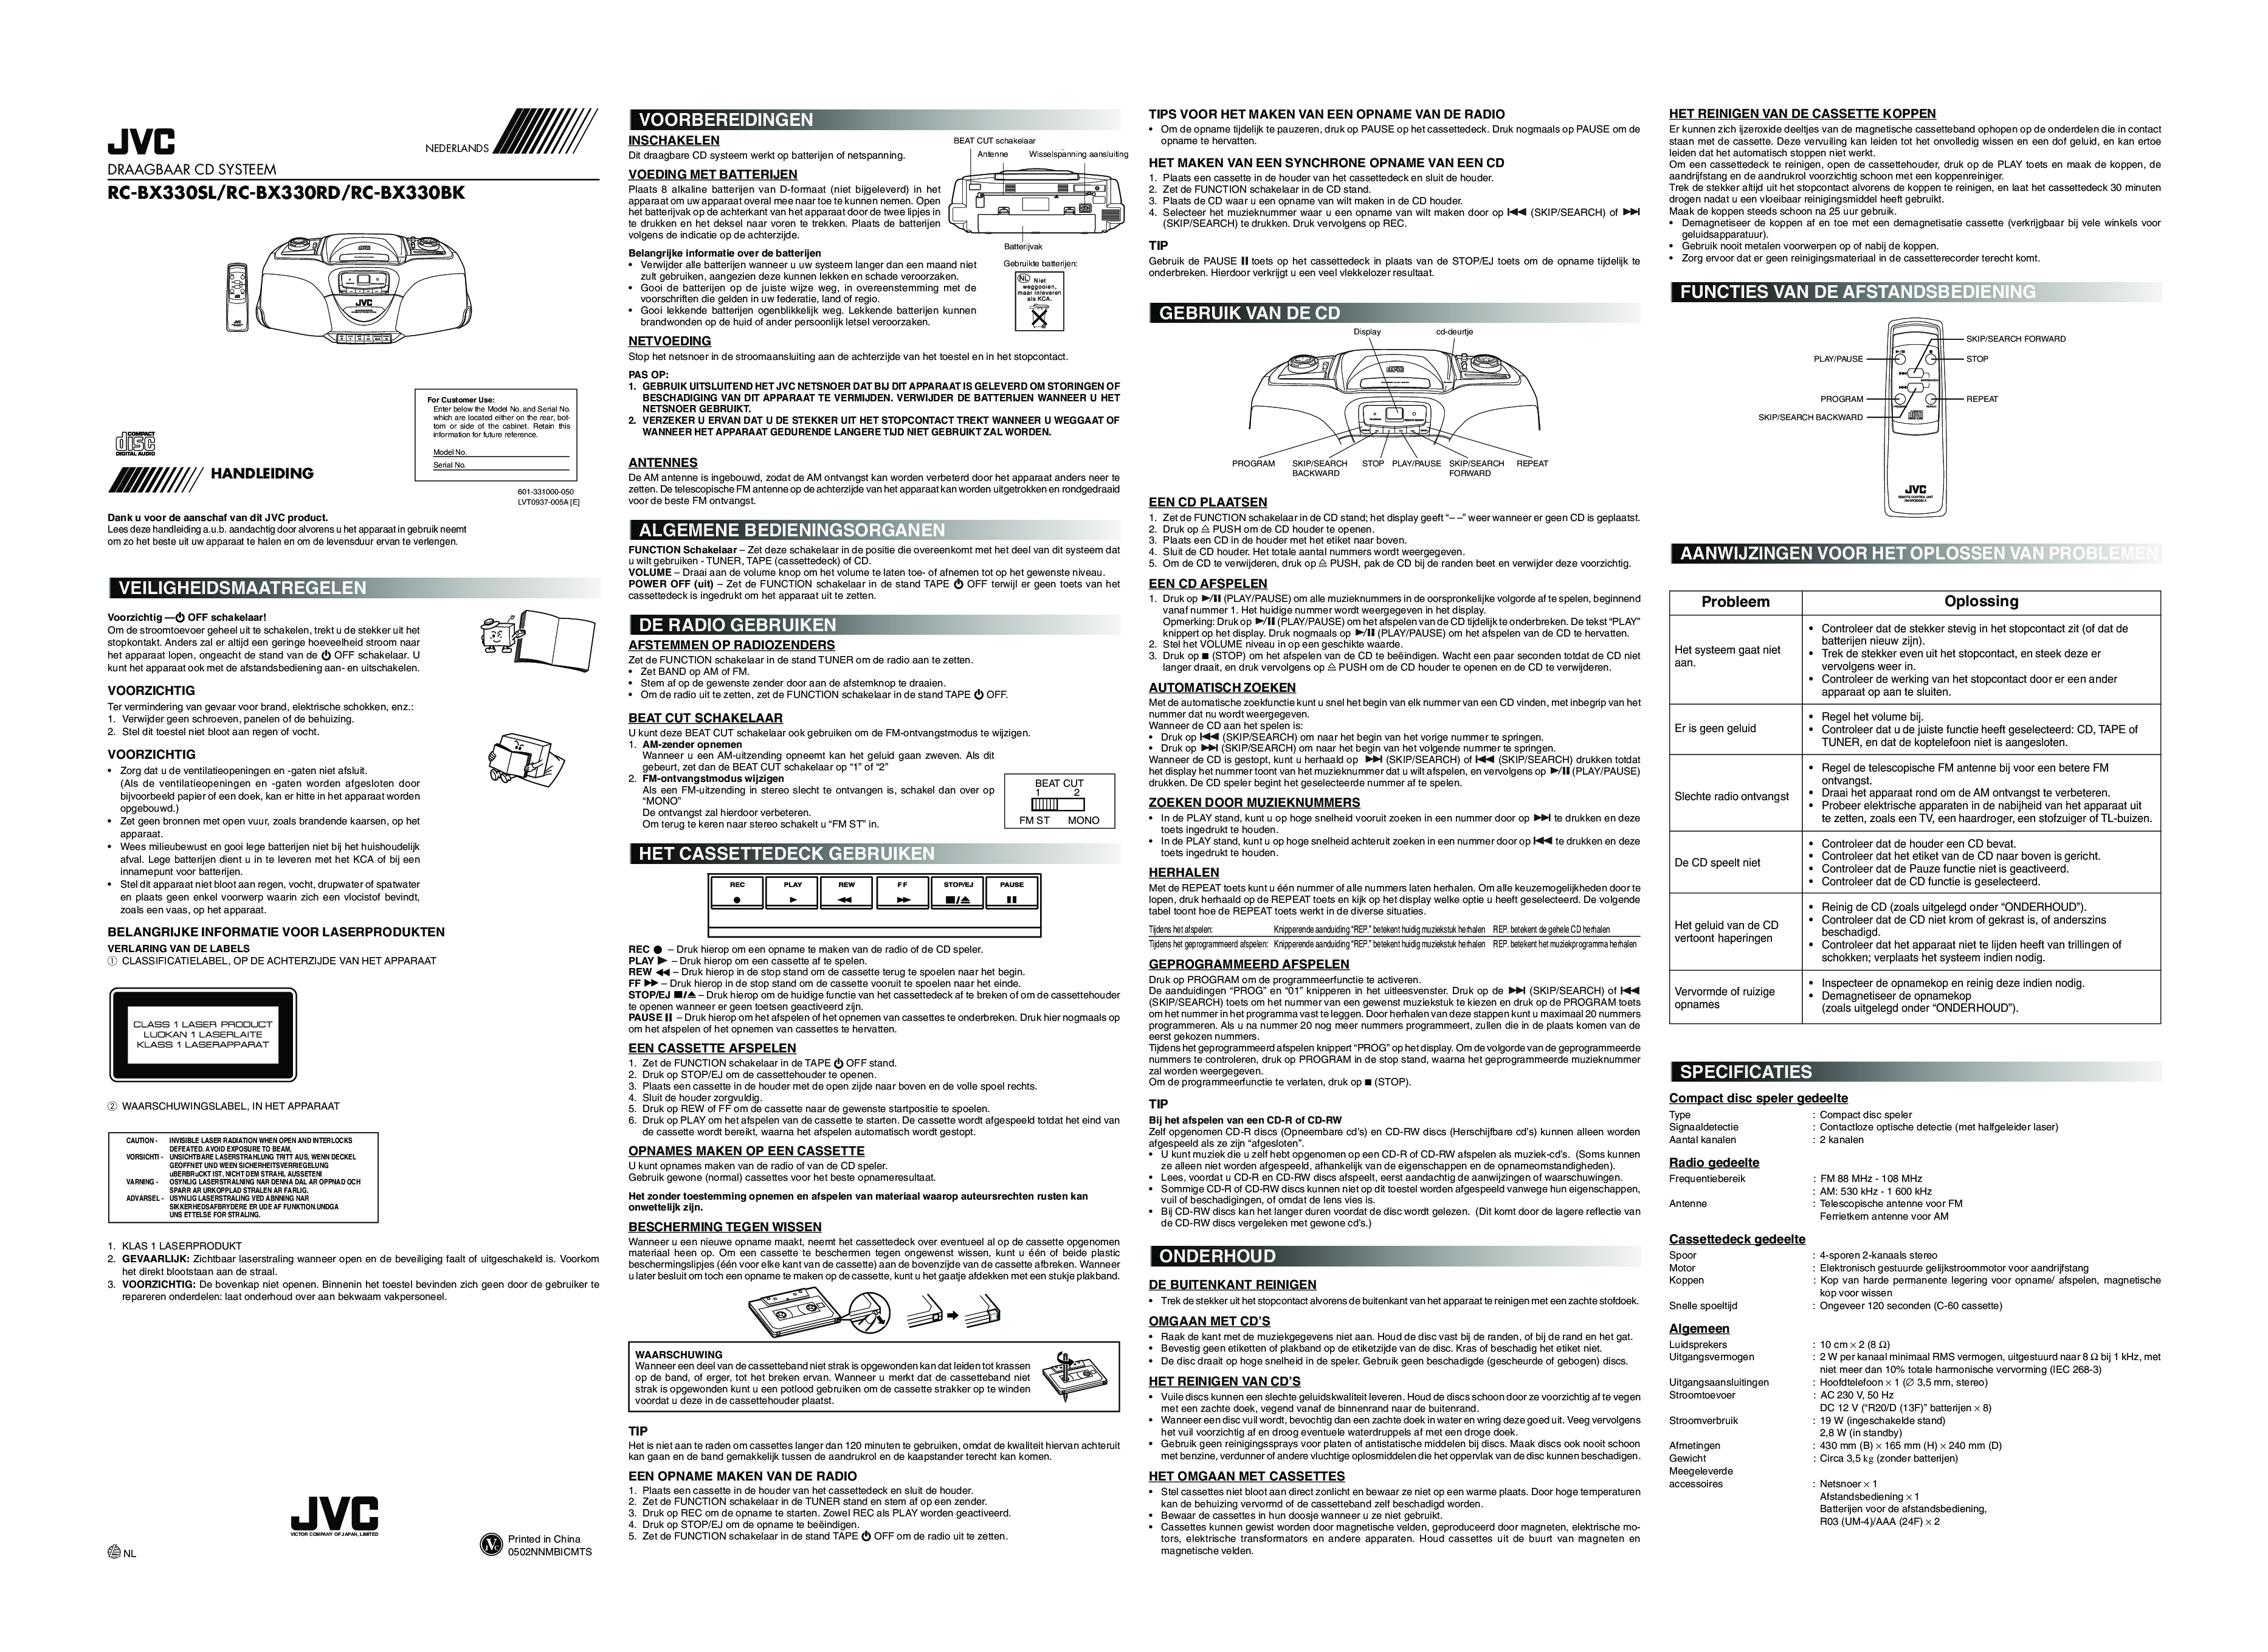 JVC RC-BX330BK, RC-BX330SL, RC-BX330RD User Manual